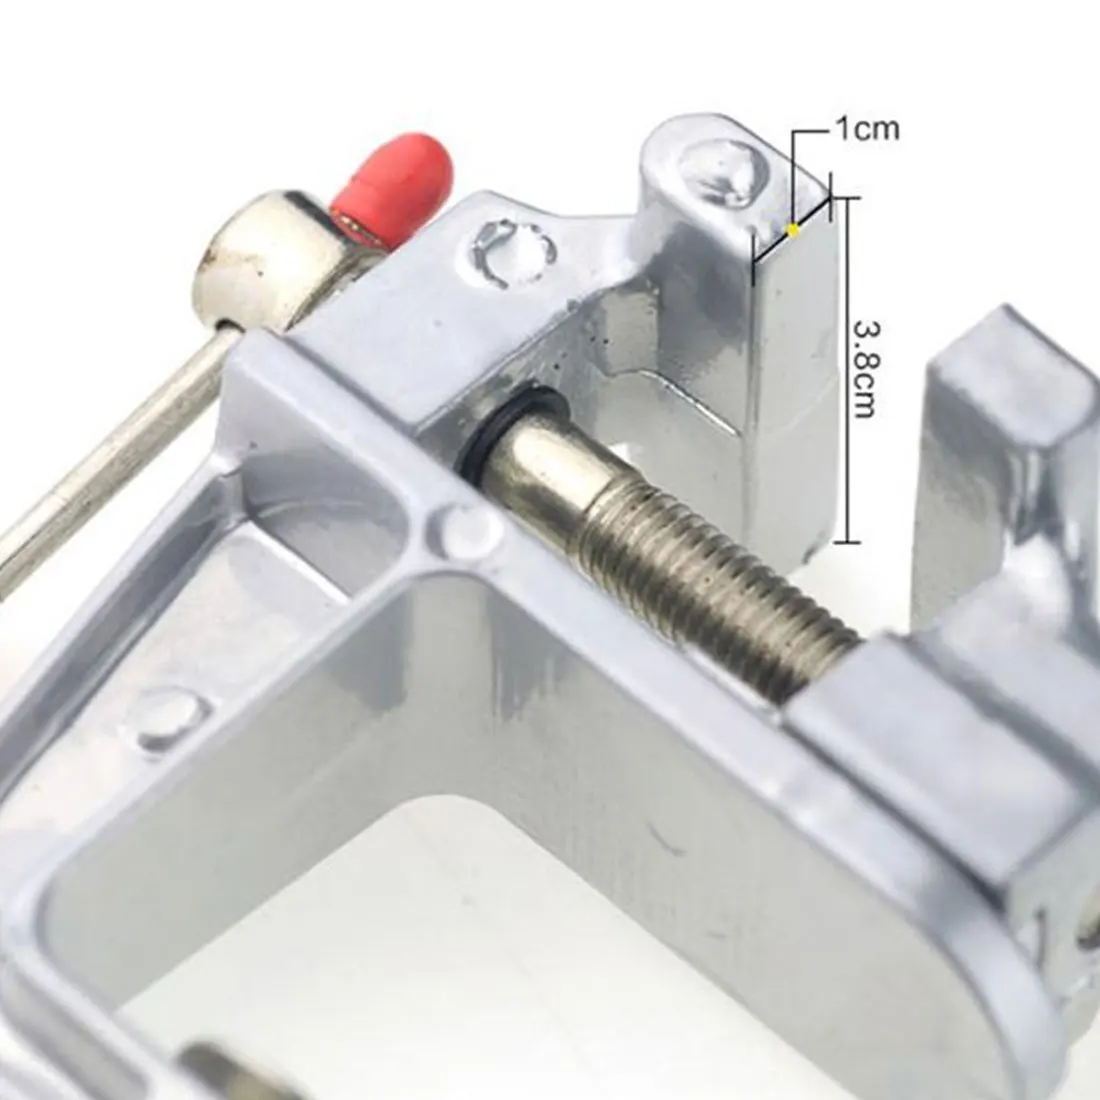 Алюминиевый миниатюрный маленький зажим для хобби ювелира на стол скамейка тиски мини инструмент тиски 30 мм зажим открытие